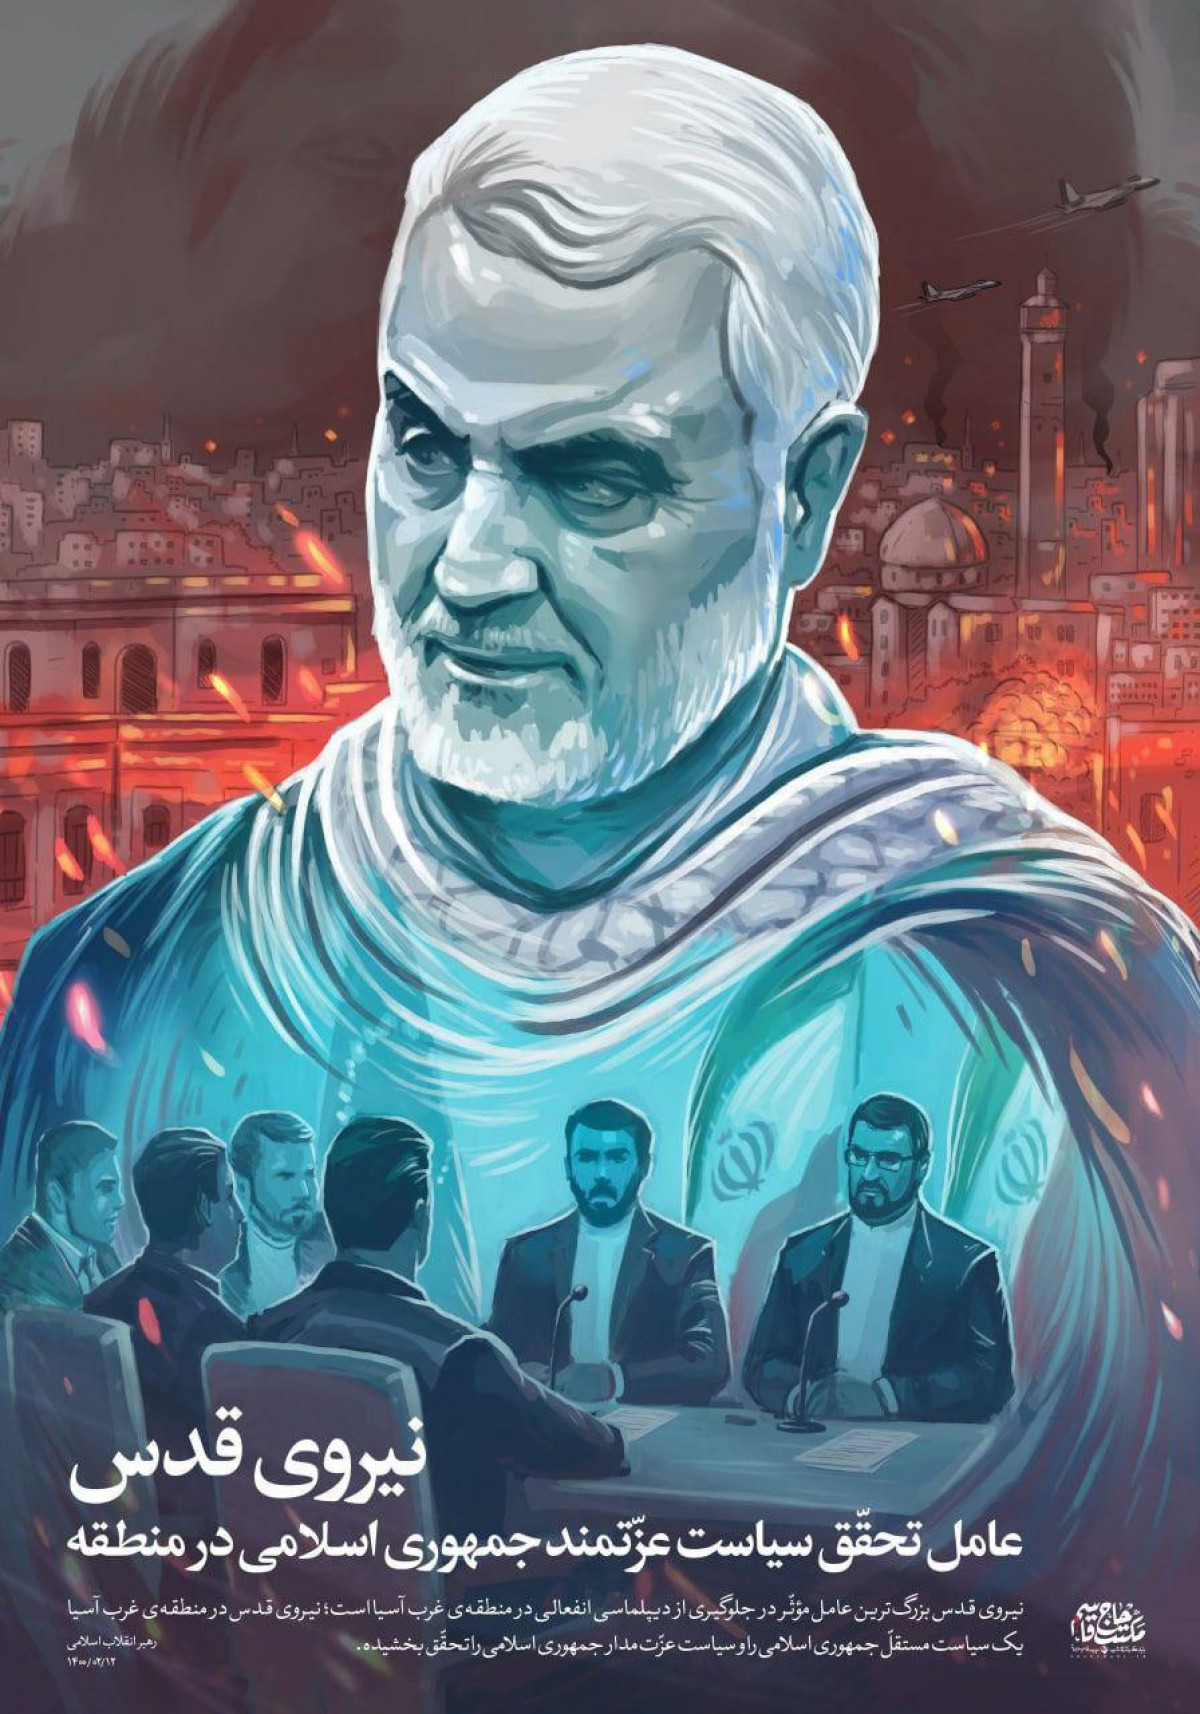 پوستر : نیروی قدس عامل تحقق سیاست عزتمند جمهوری اسلامی در منطقه